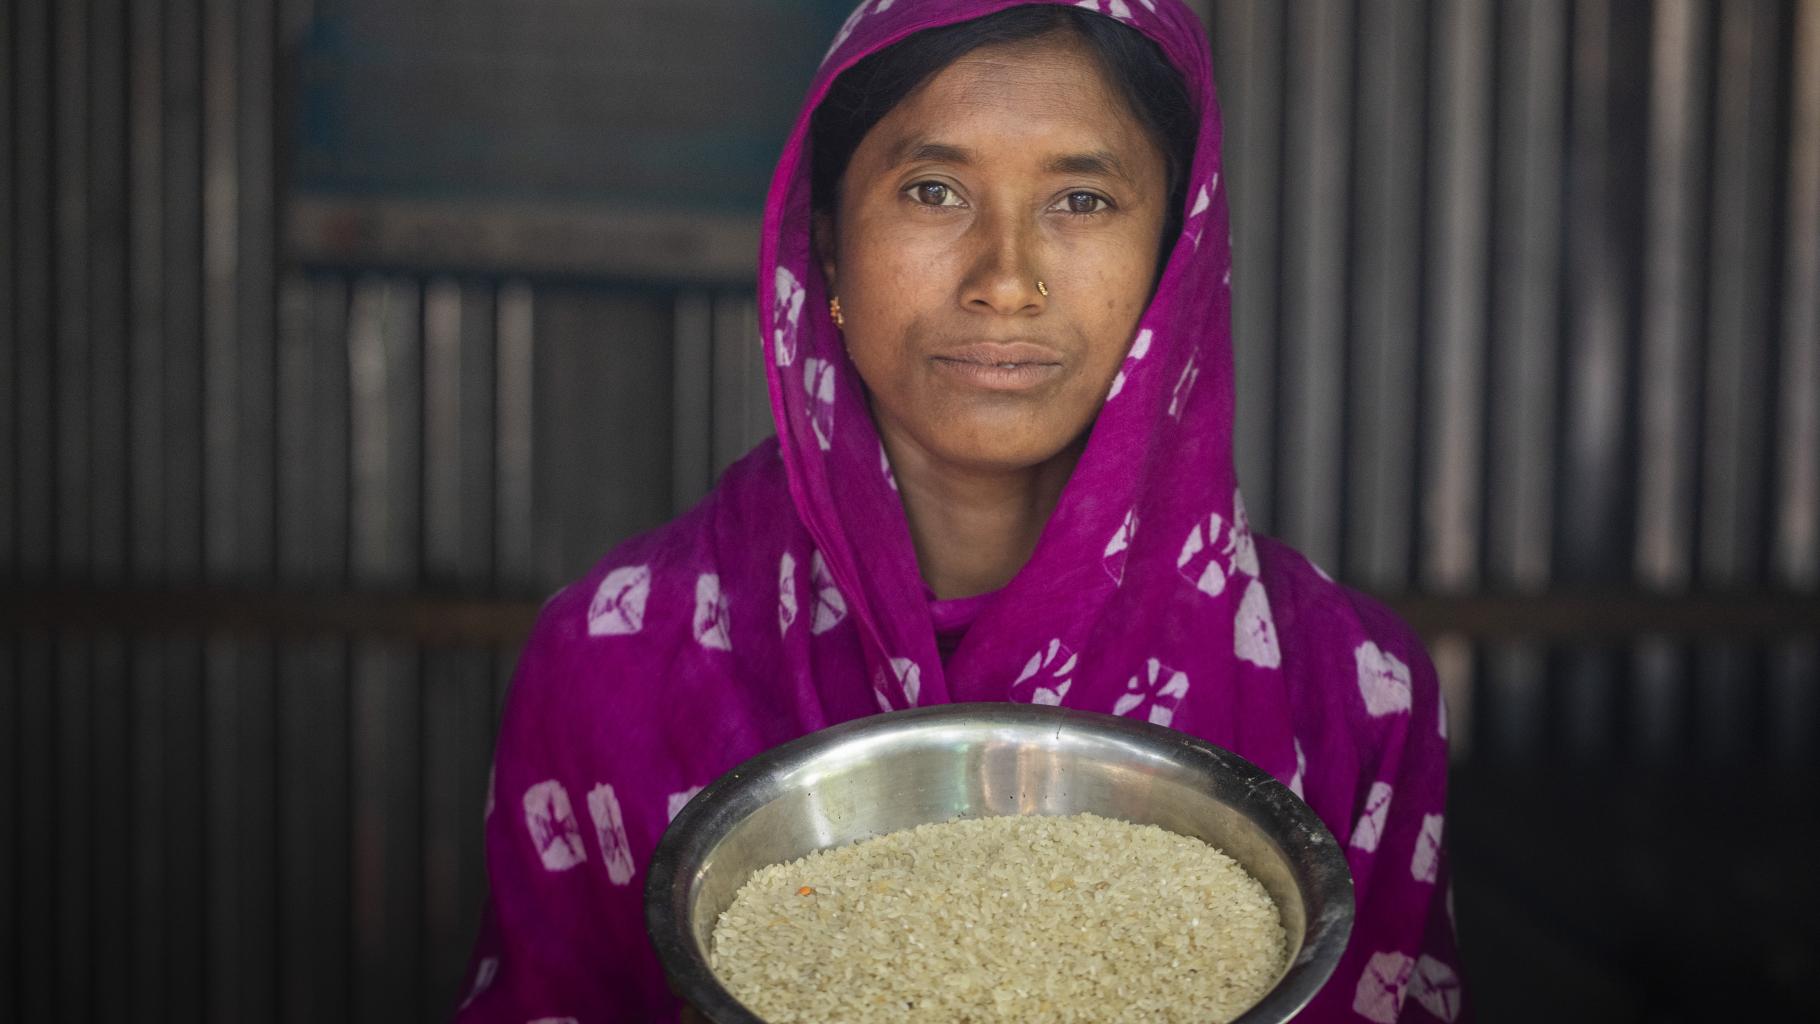 Eine Frau guckt in die Kamera und hält uns eine Schüssel mit Reiskörnern entgegen